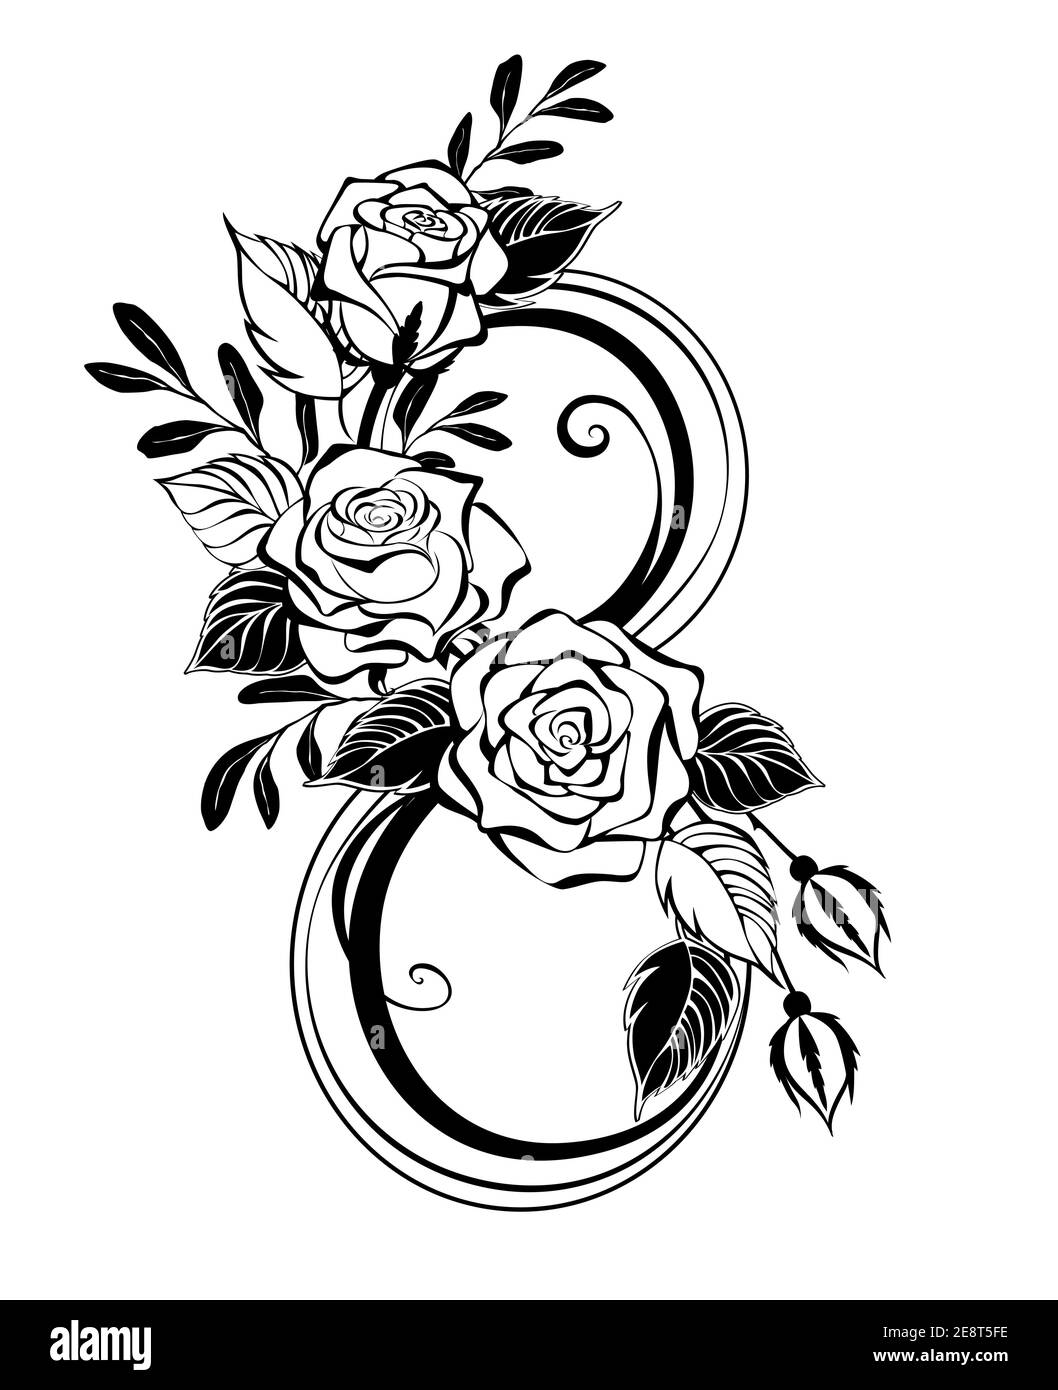 Kontur Nummer acht, verziert mit stilisierten, künstlerisch gezeichneten Rosen und Zierpflanzenzweigen auf weißem Grund. Design 8. März. Stock Vektor